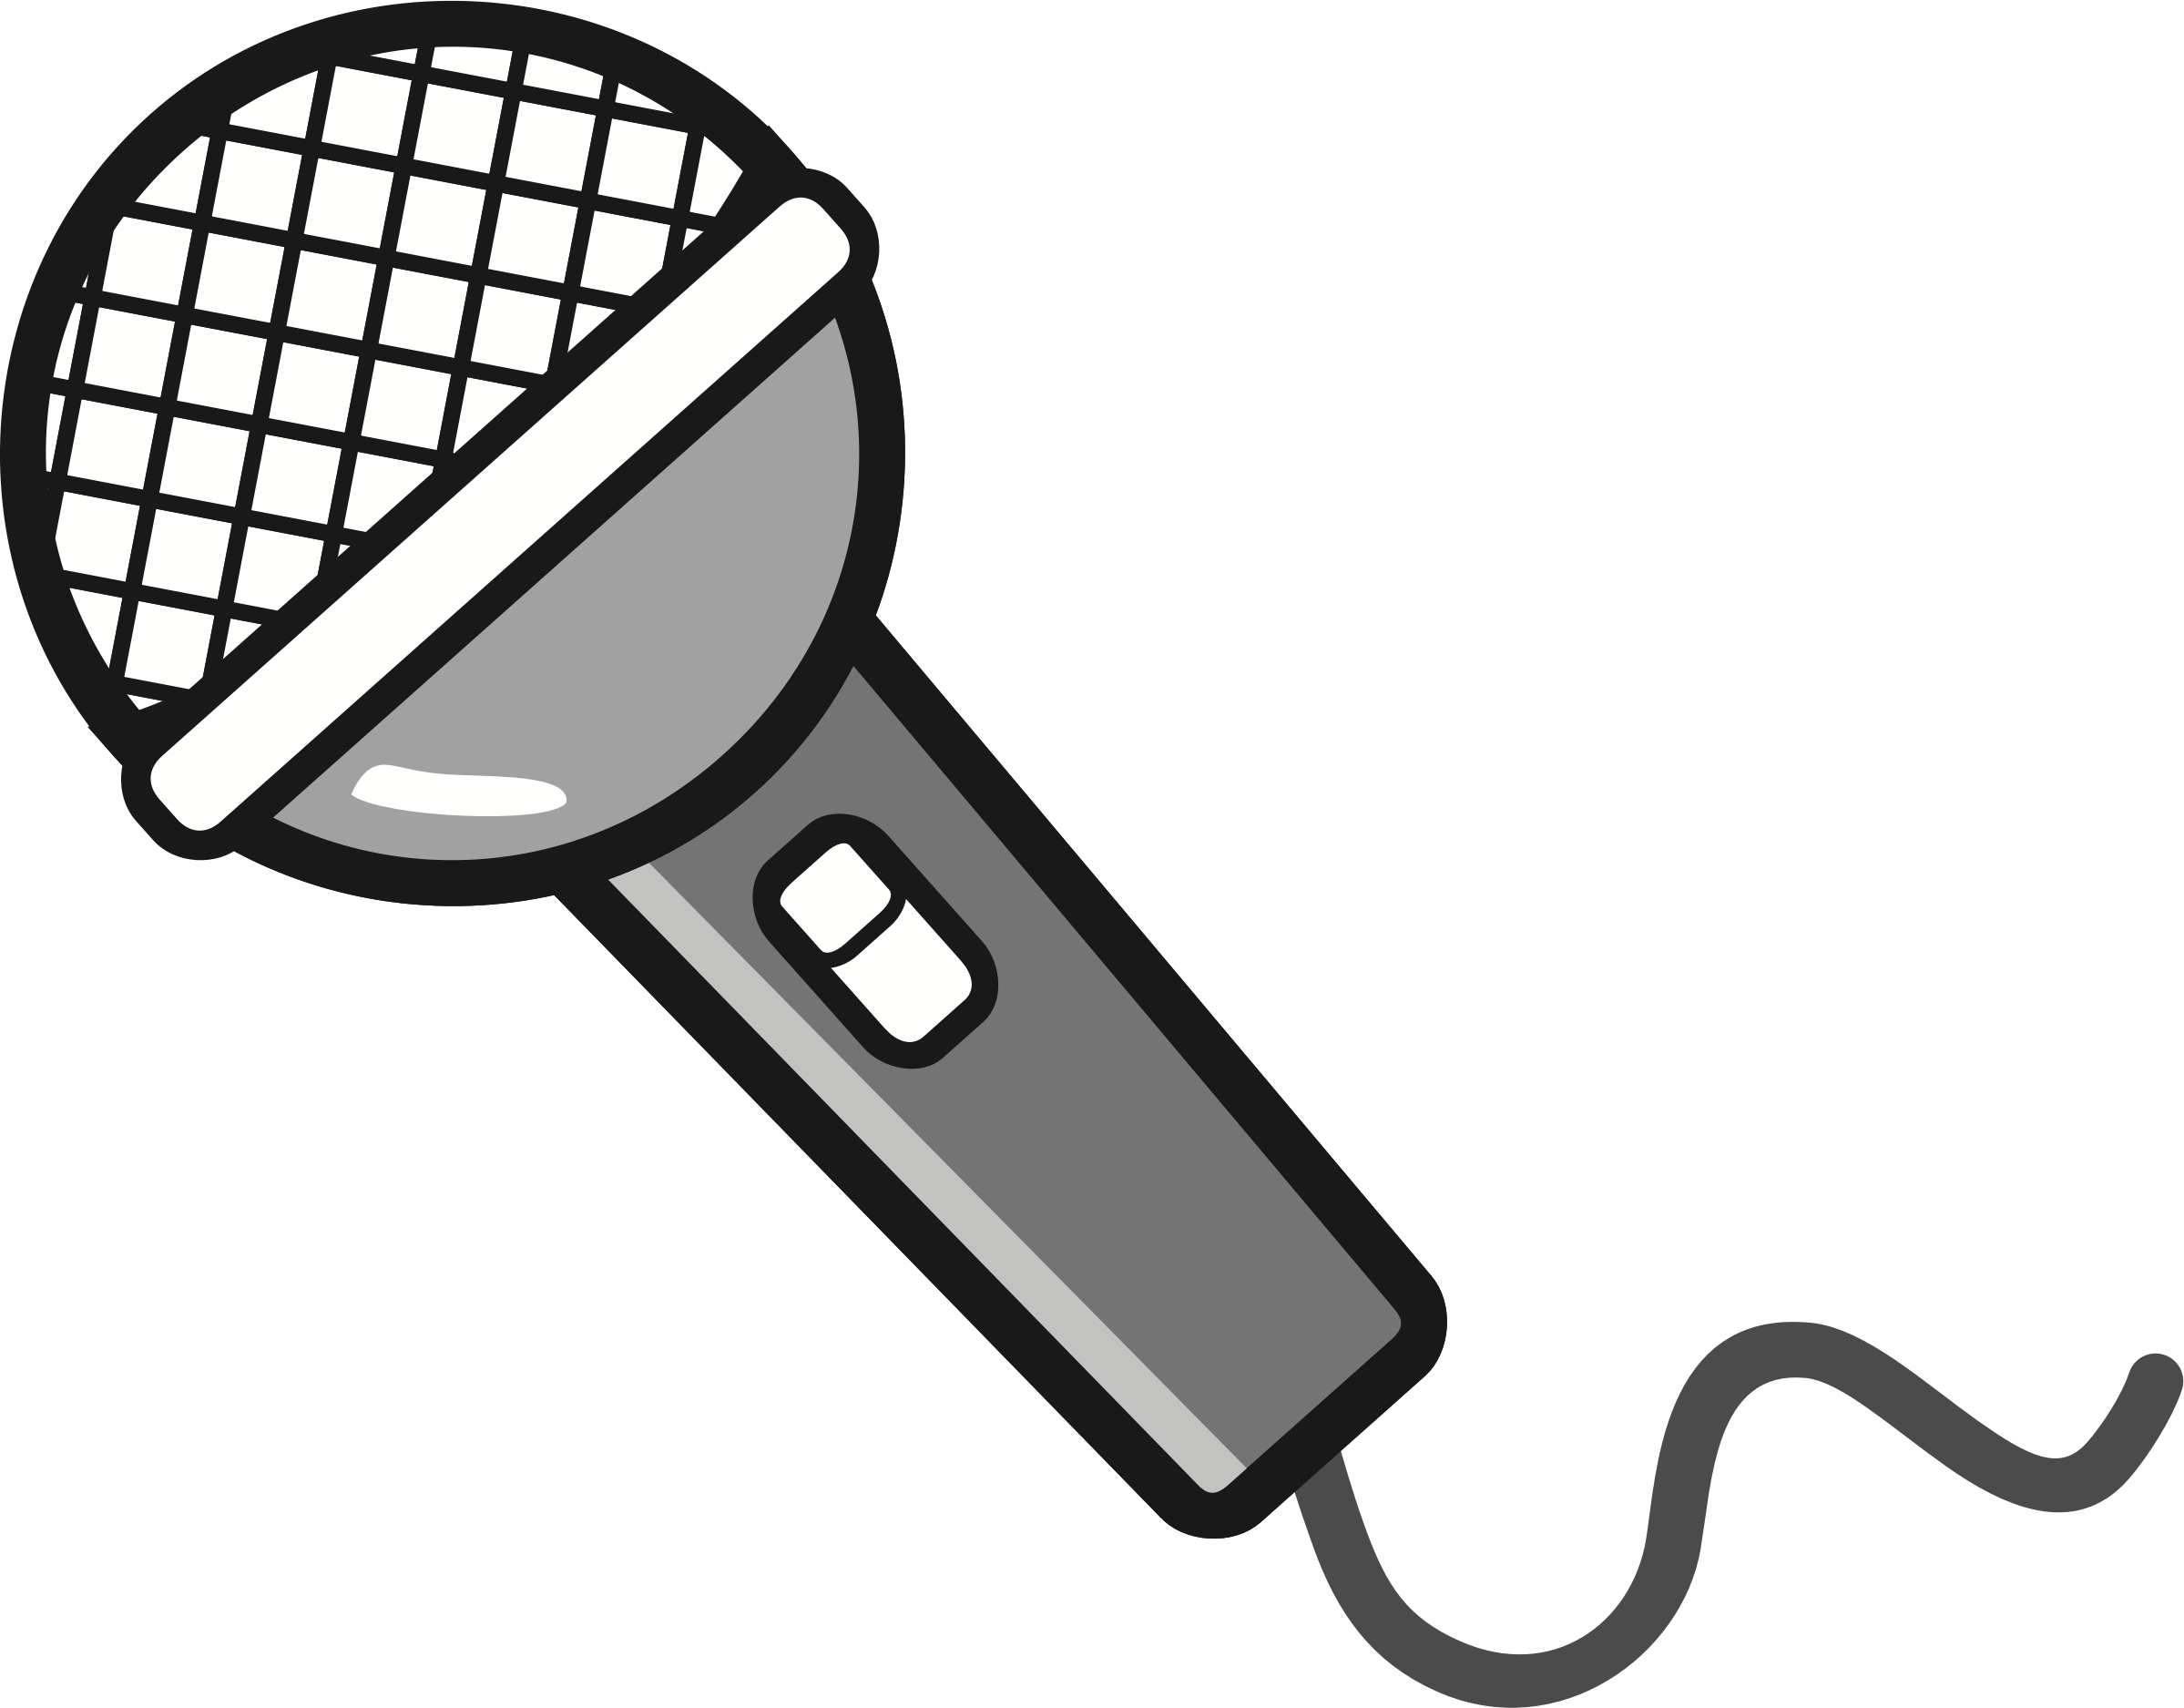 Microphone clipart public domain, Microphone public domain Transparent